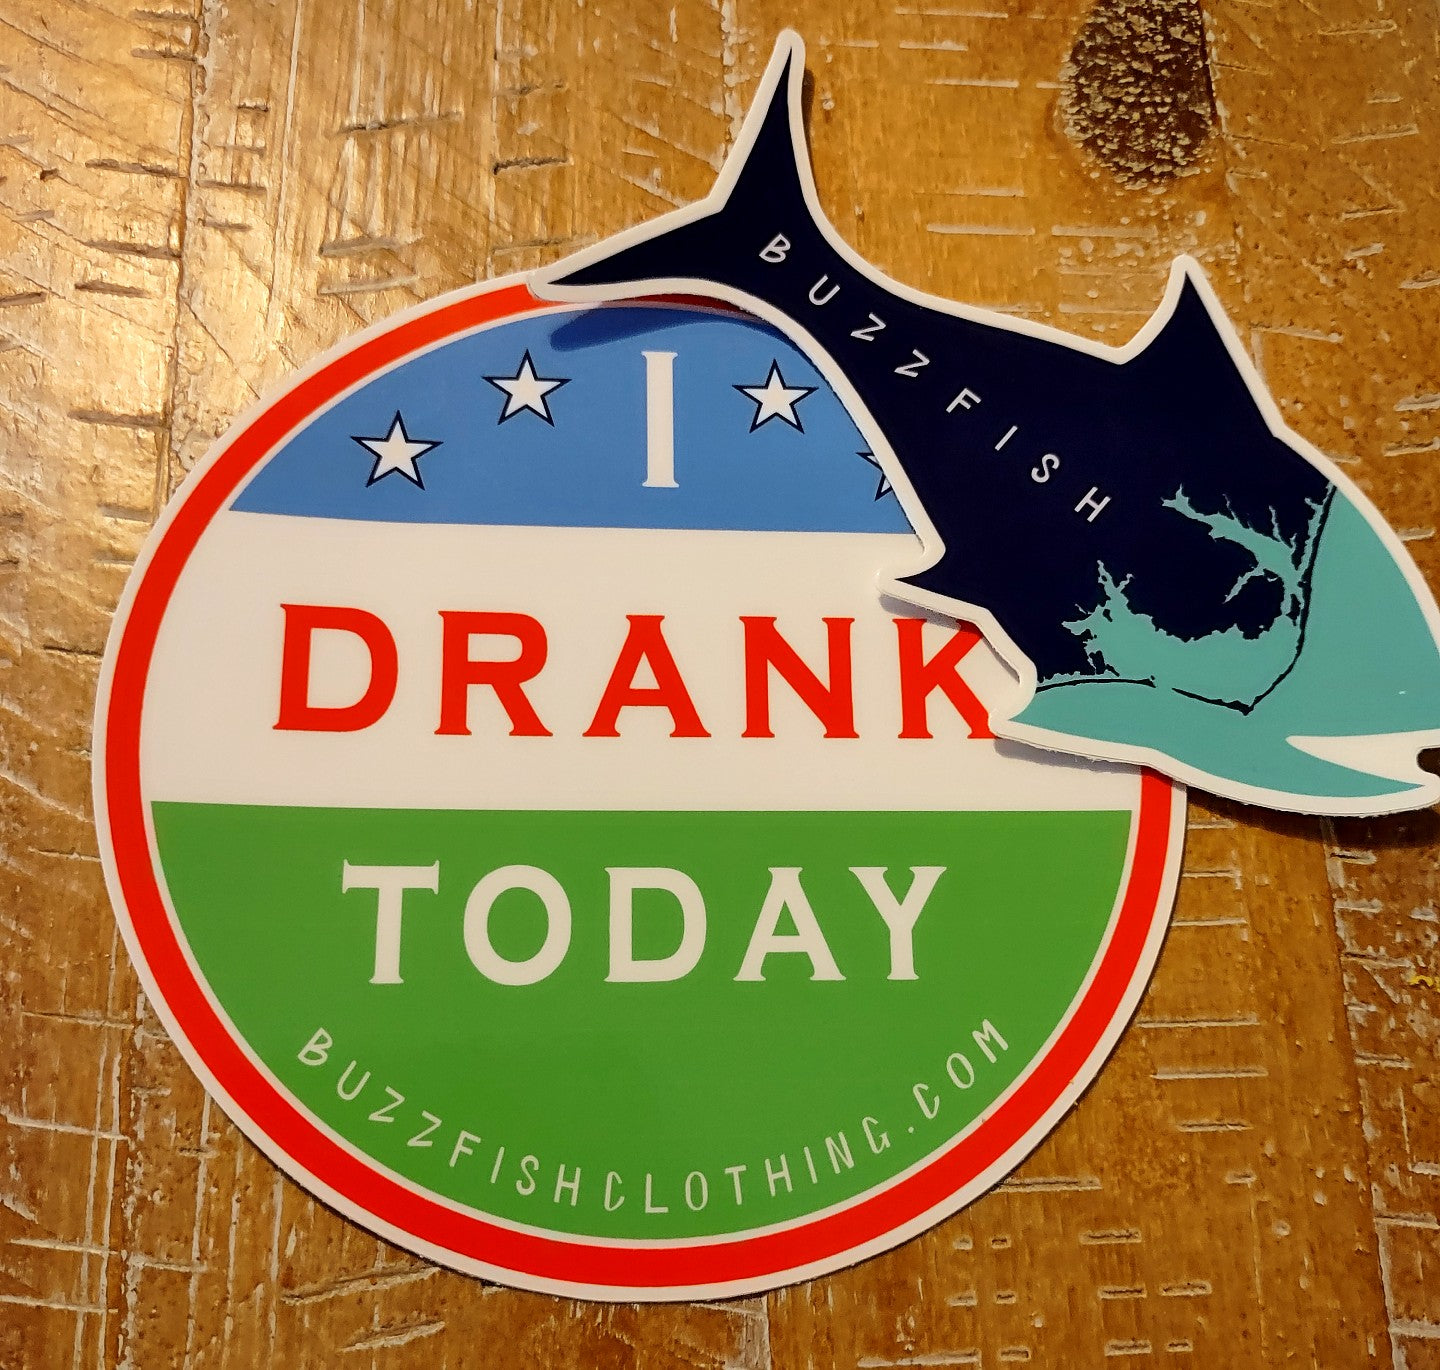 5" I Drank Today sticker